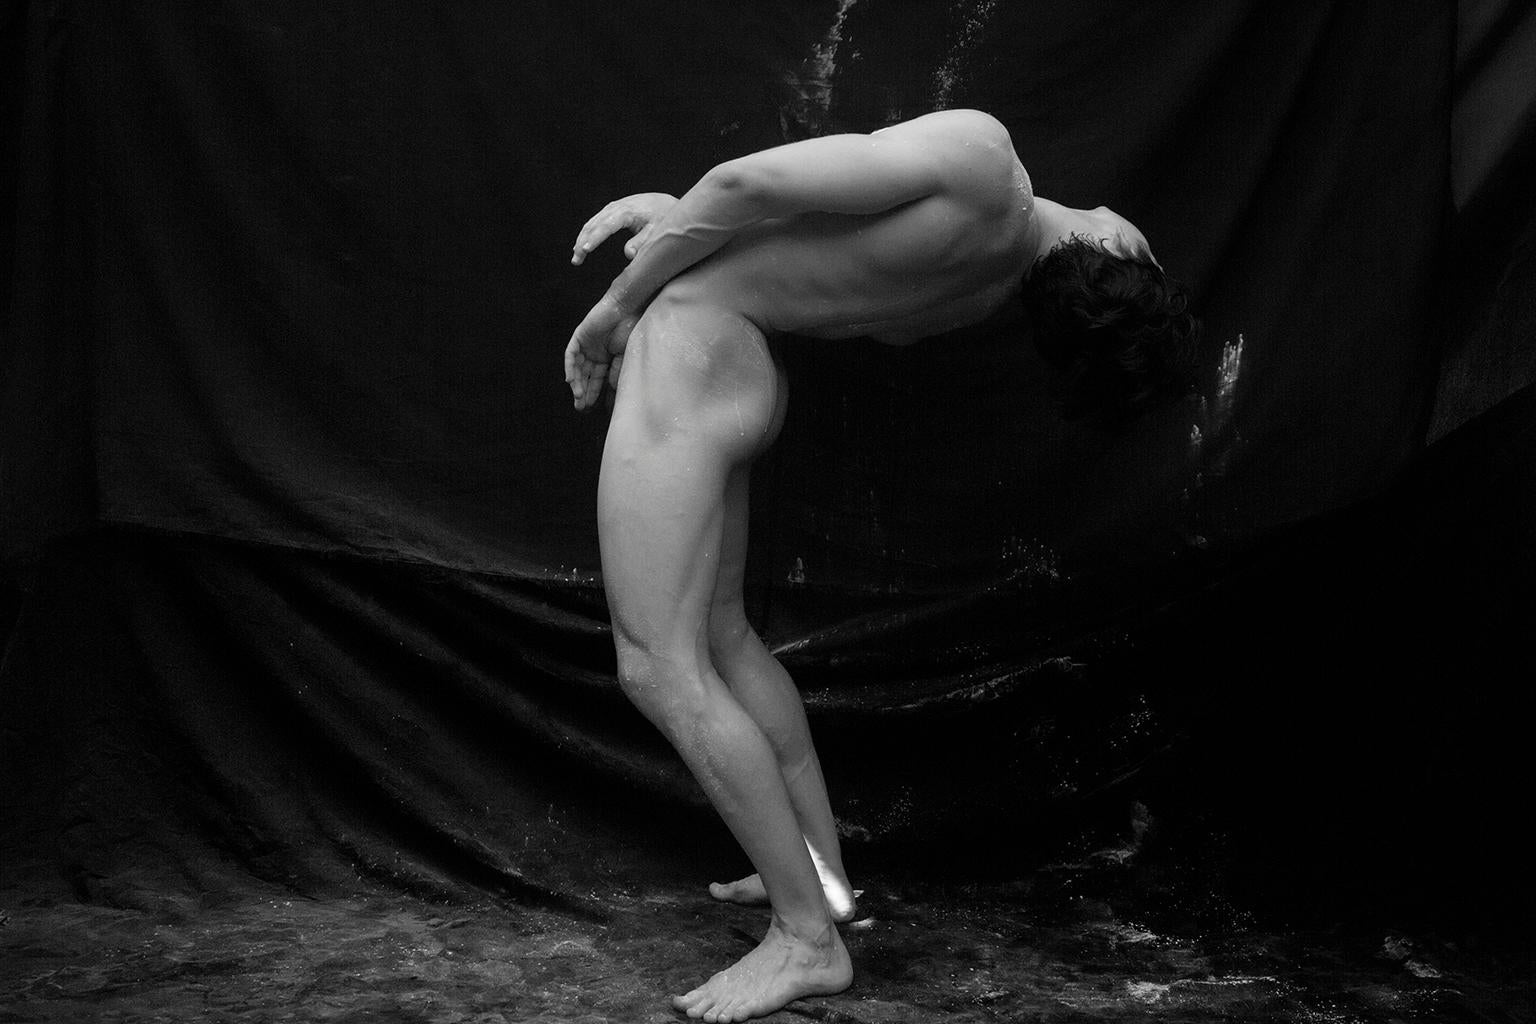 Ricky Cohete Nude Photograph – Ohne Titel, aus der Serie Acto Uno. Männlicher Akt Limitierte Auflage S/W-Fotografie